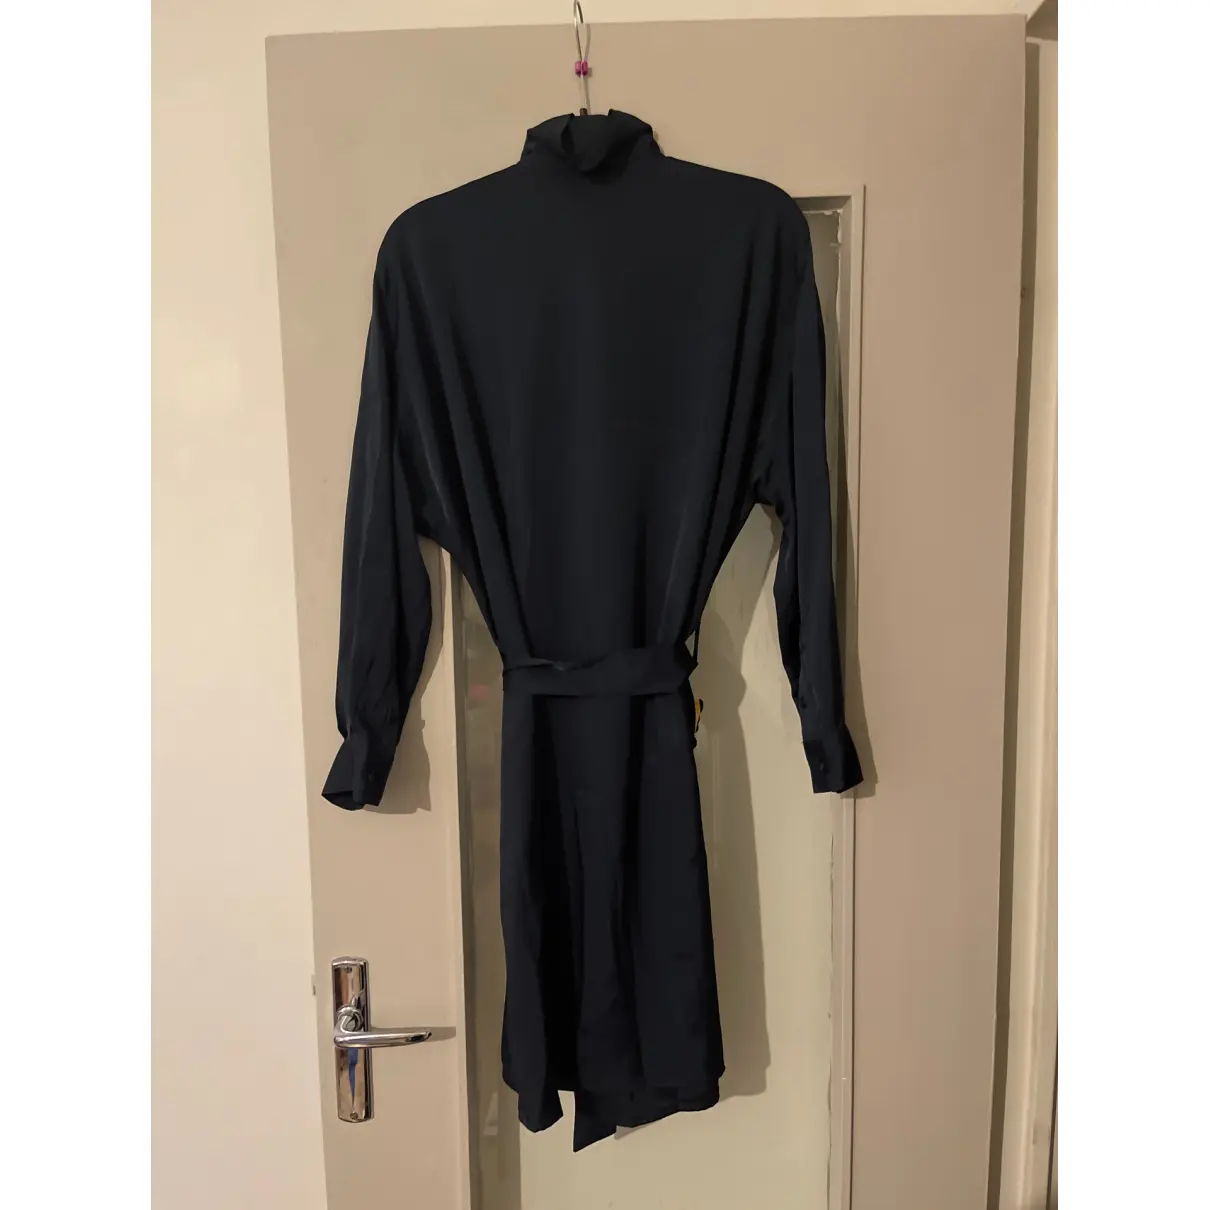 Buy Soeur Mid-length dress online